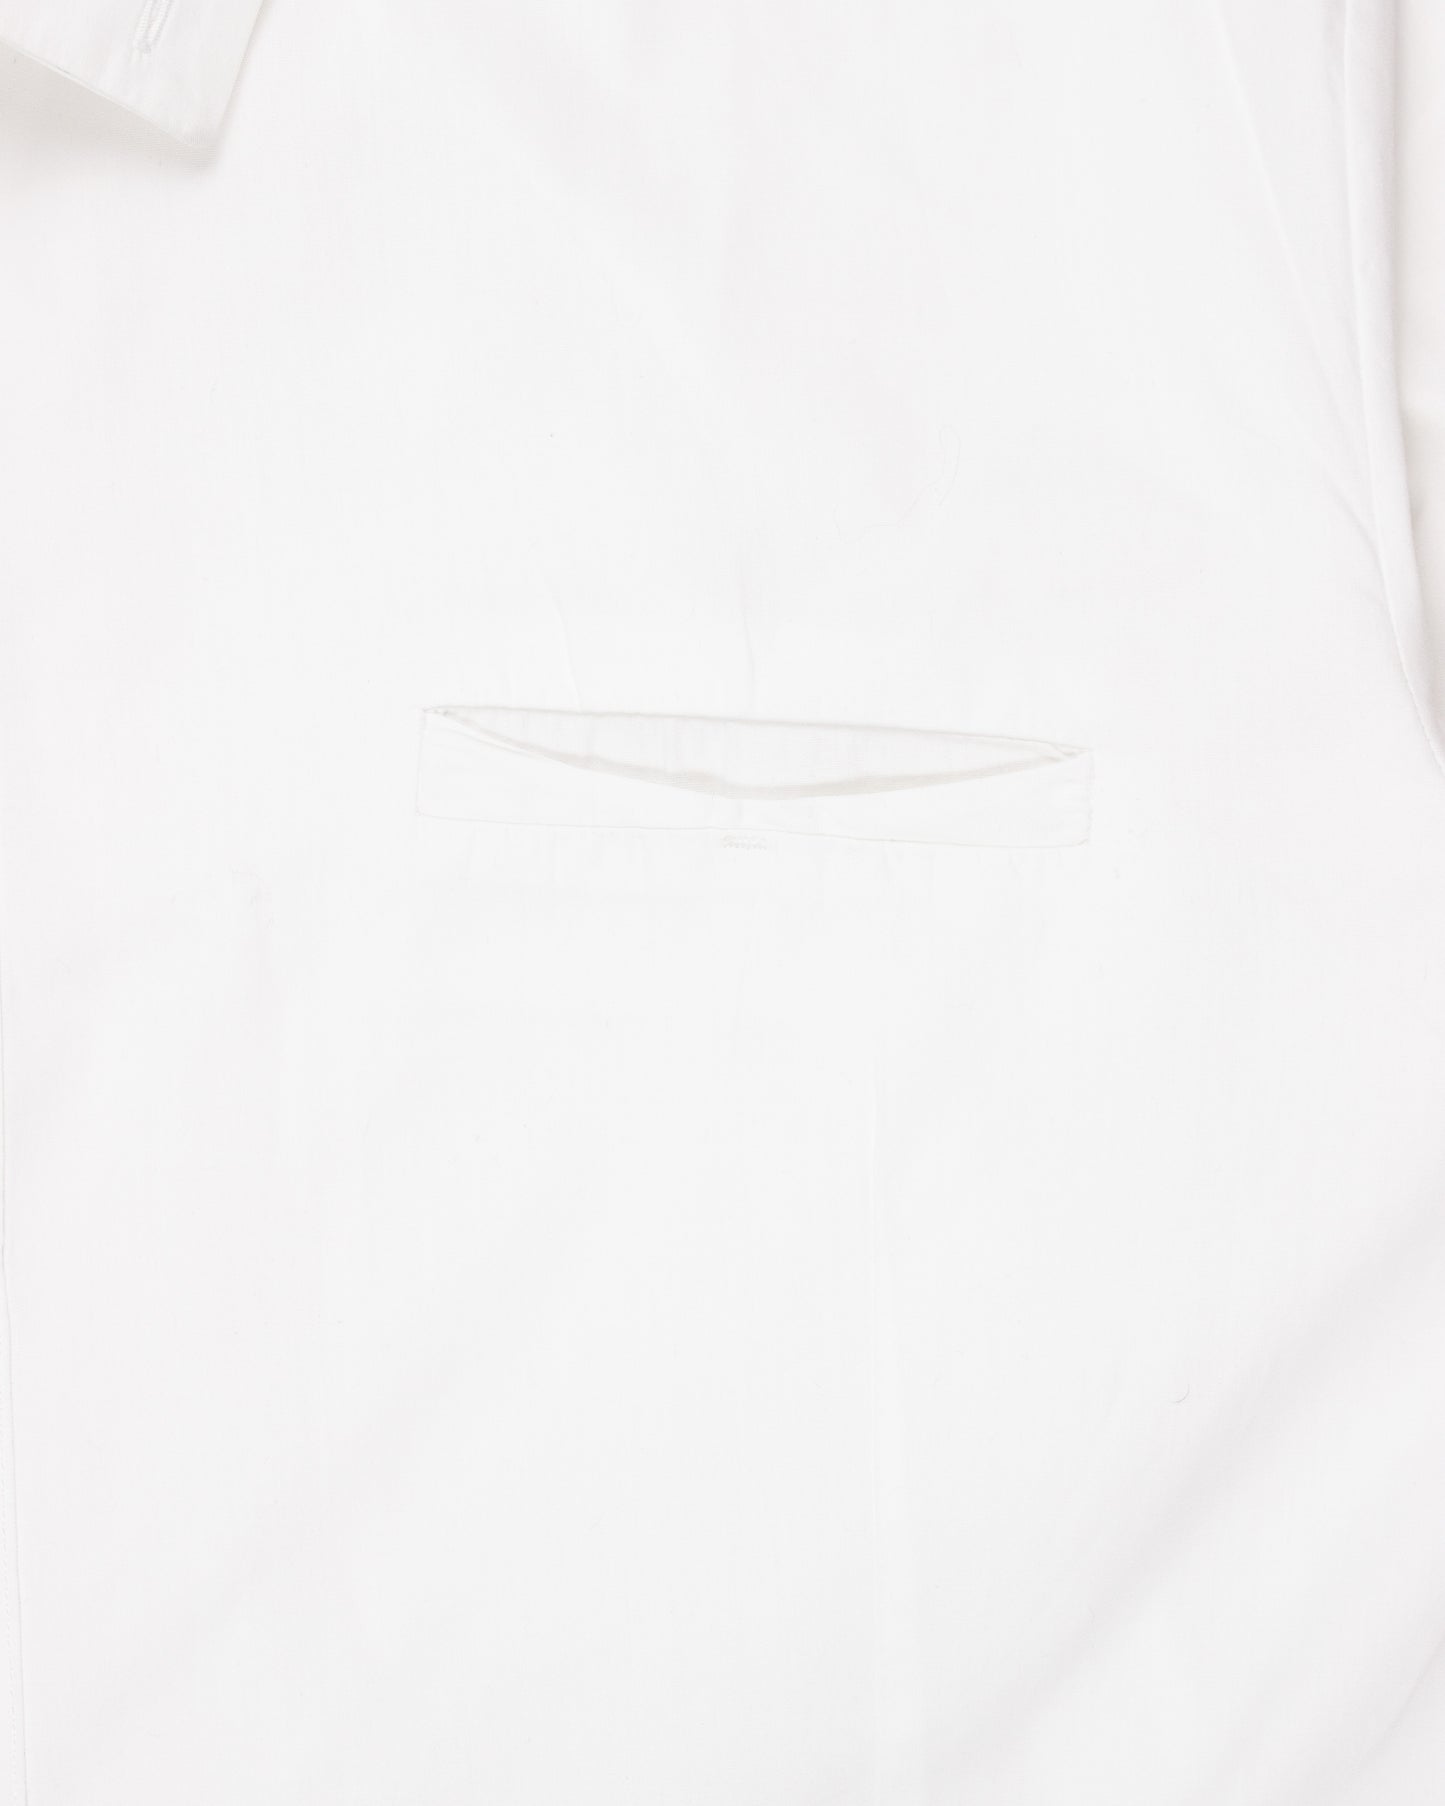 Overlock White Shirt